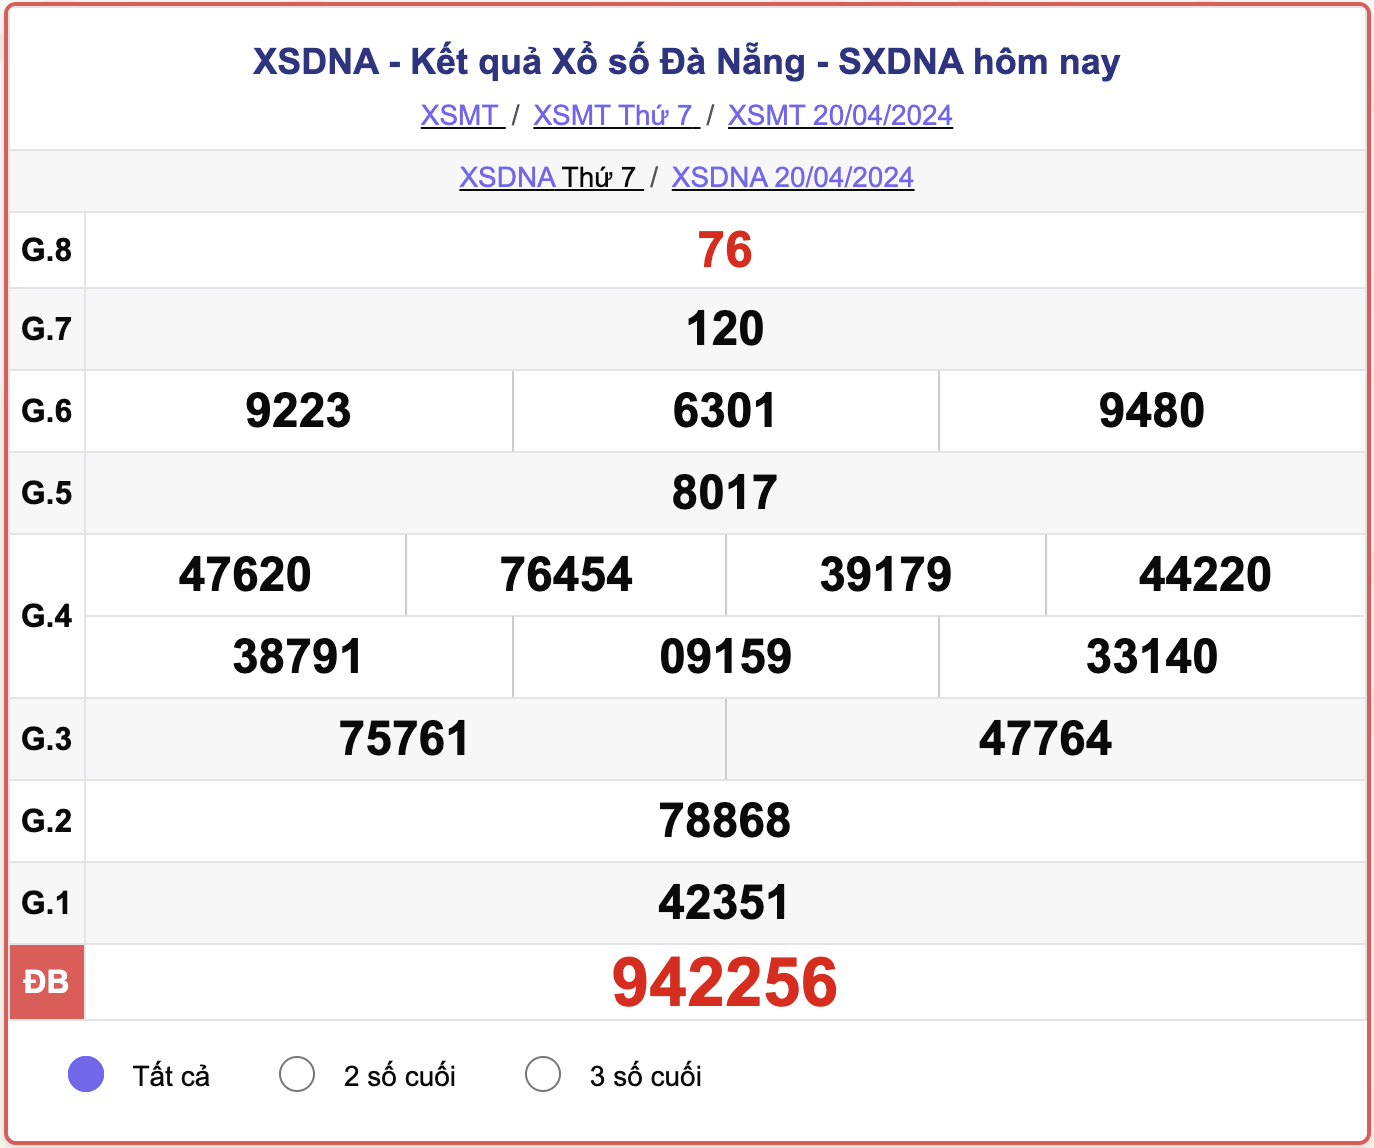 XSDNA thứ 7, kết quả xổ số Đà Nẵng ngày 20/4/2024.